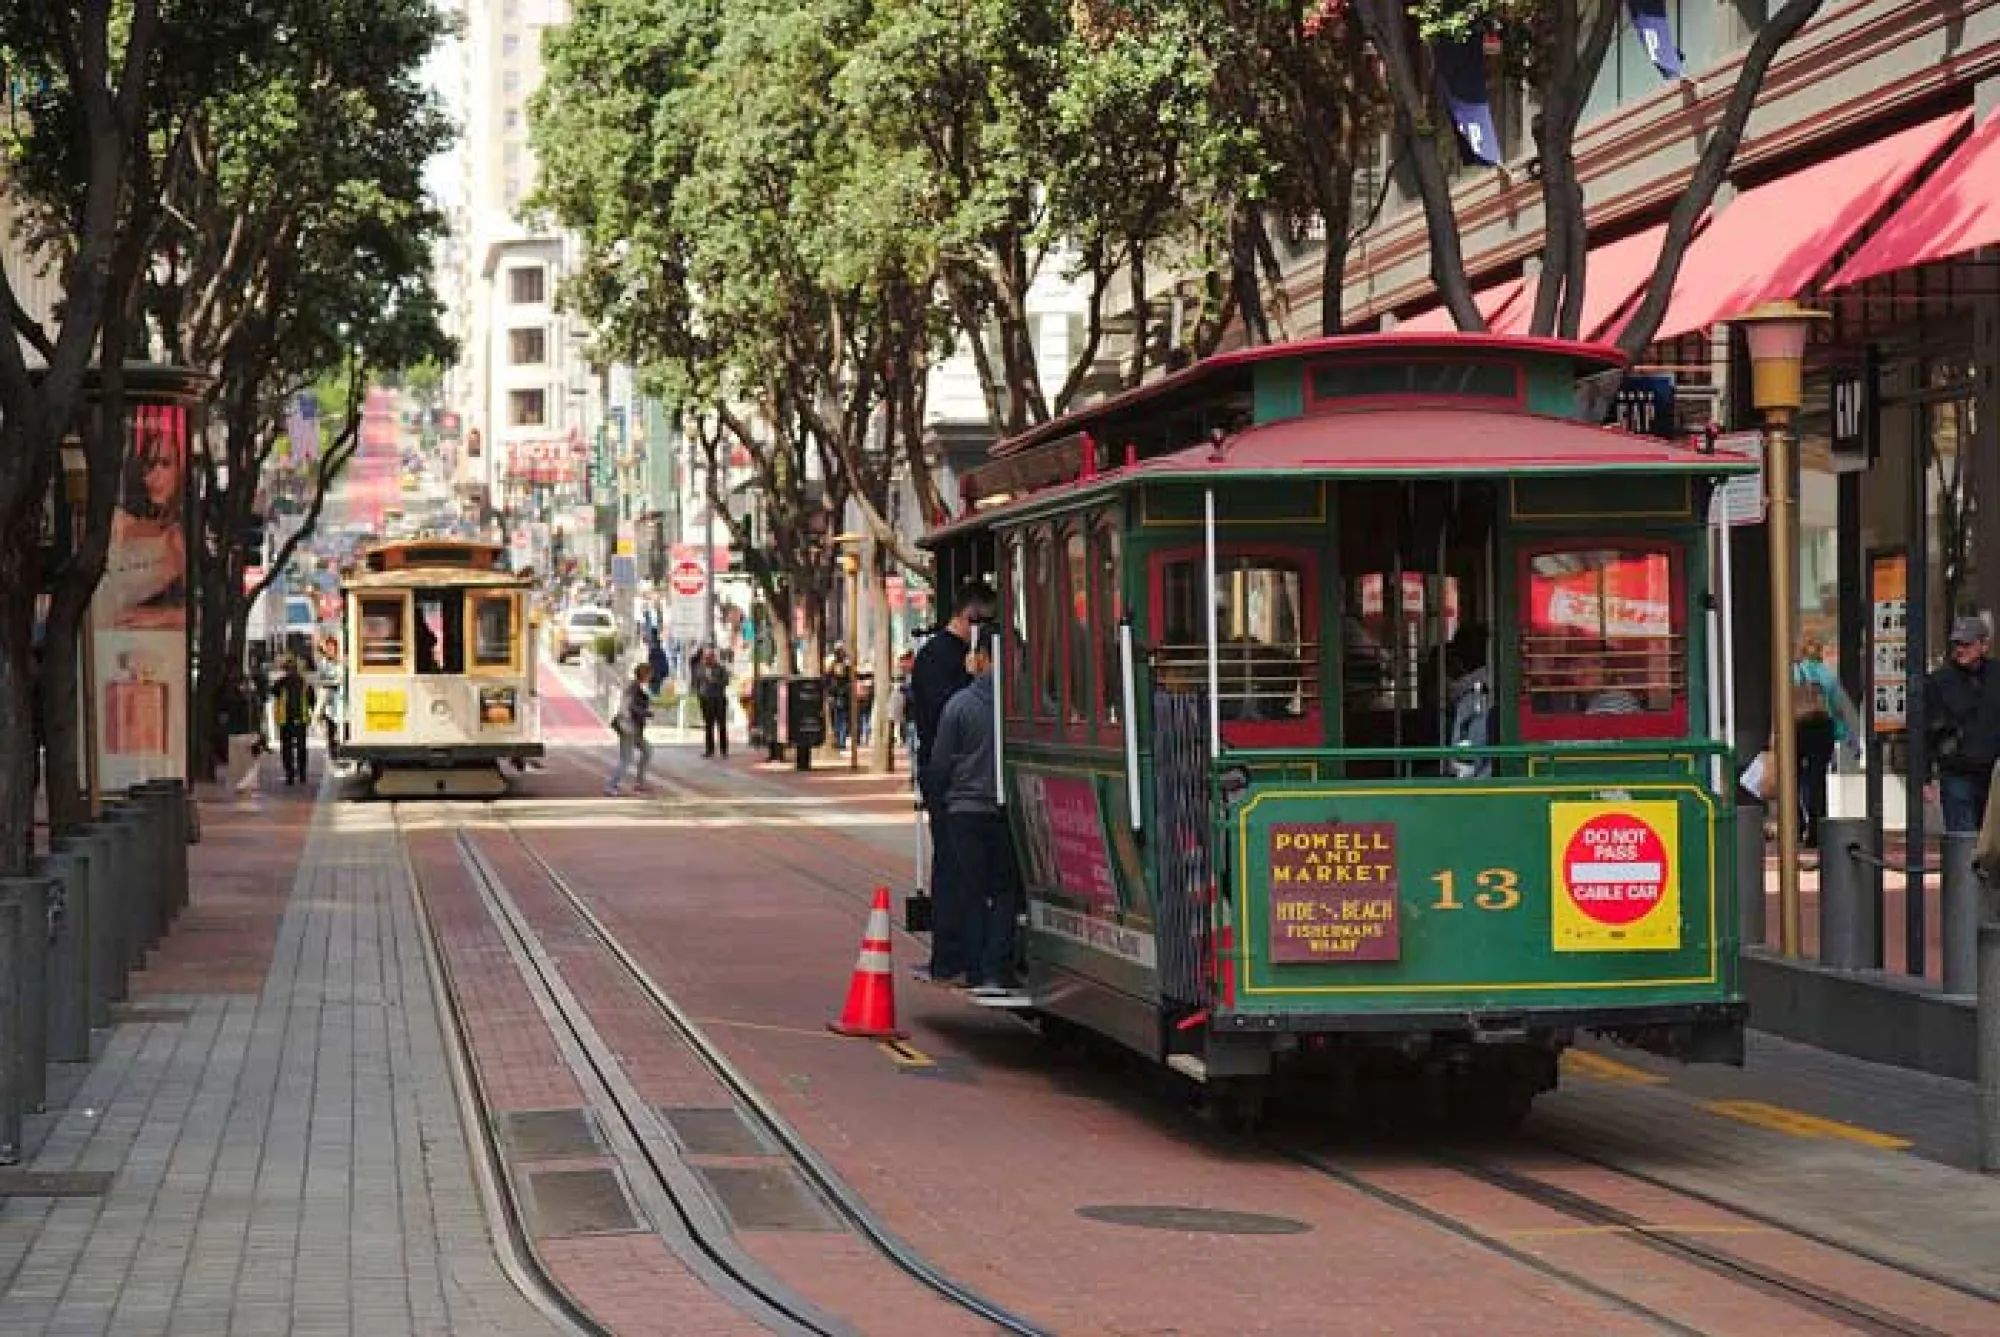 Канатный трамвай. Канатный трамвай Сан-Франциско. Сан Франциско Cable car. Канатный трамвайчик в Сан Франциско. Канатная дорога Сан Франциско.